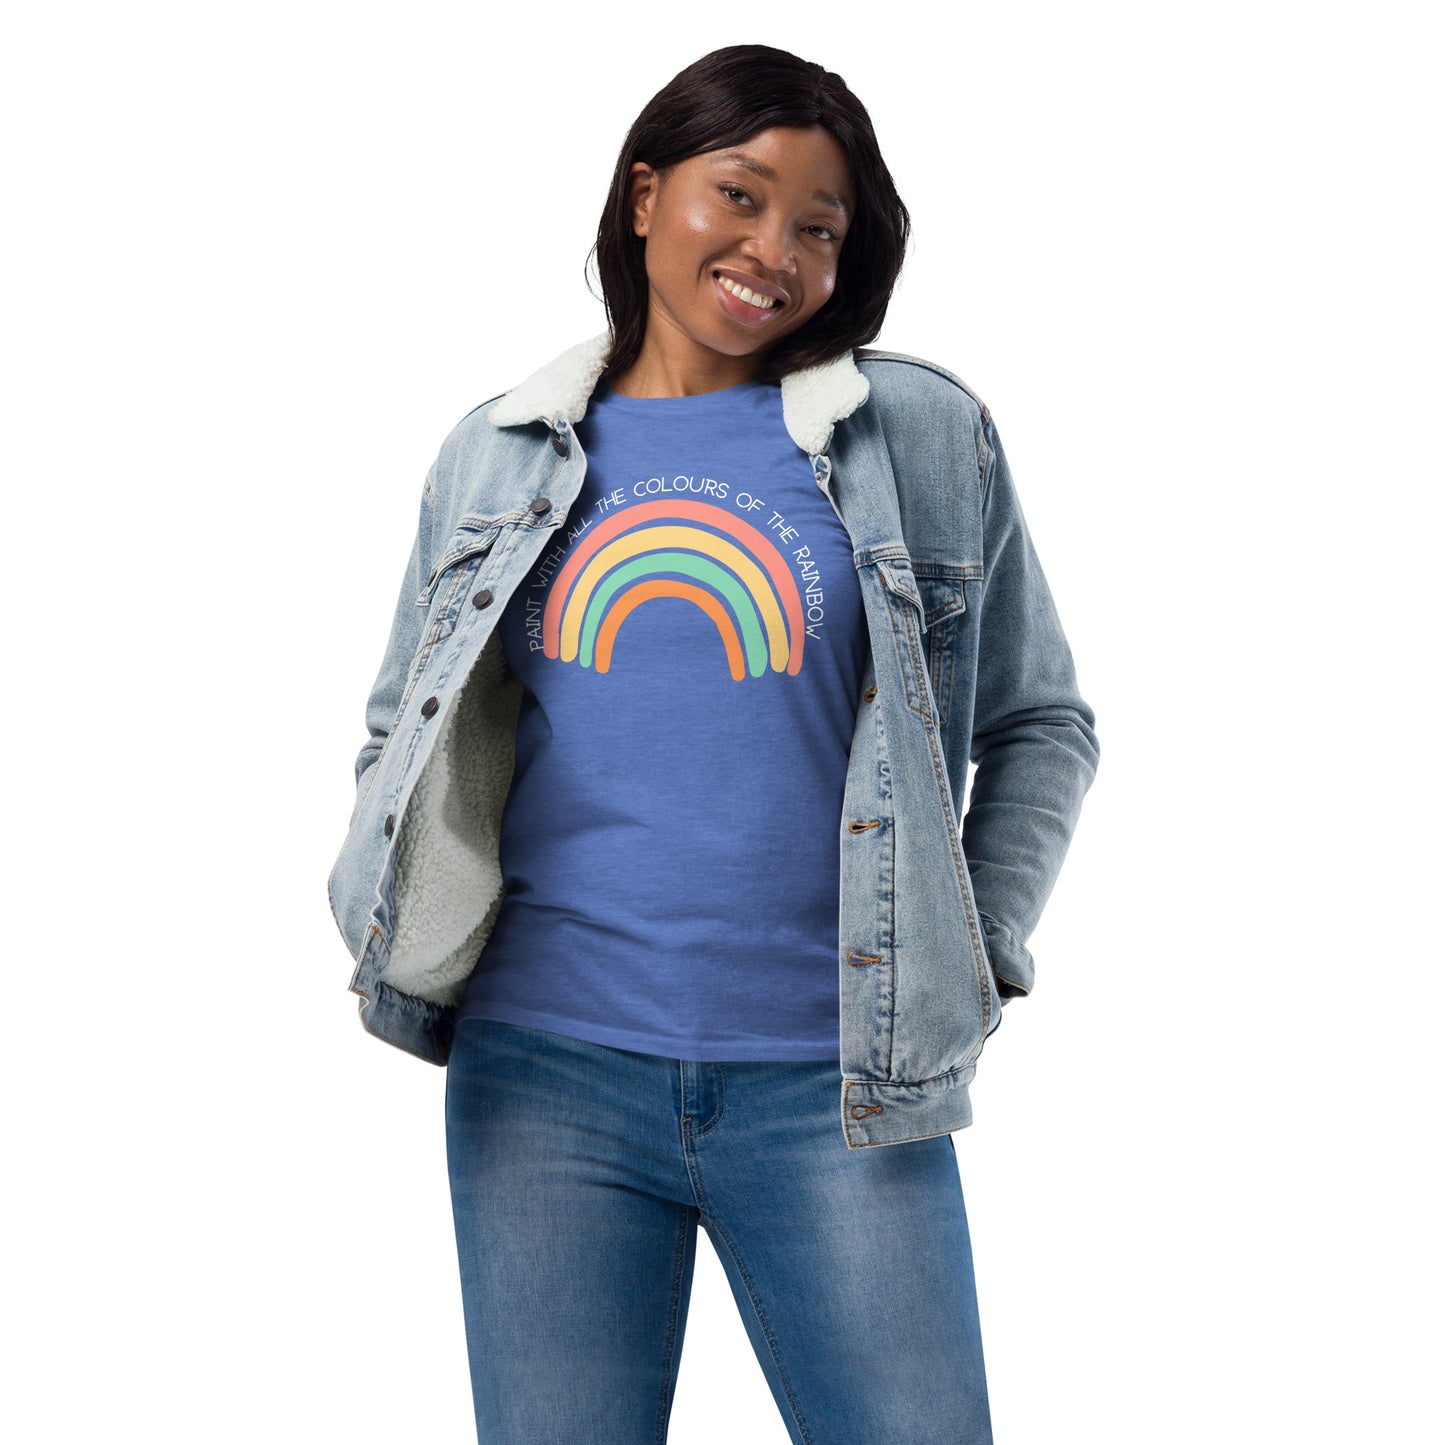 Rainbow Unisex fashion long sleeve shirt